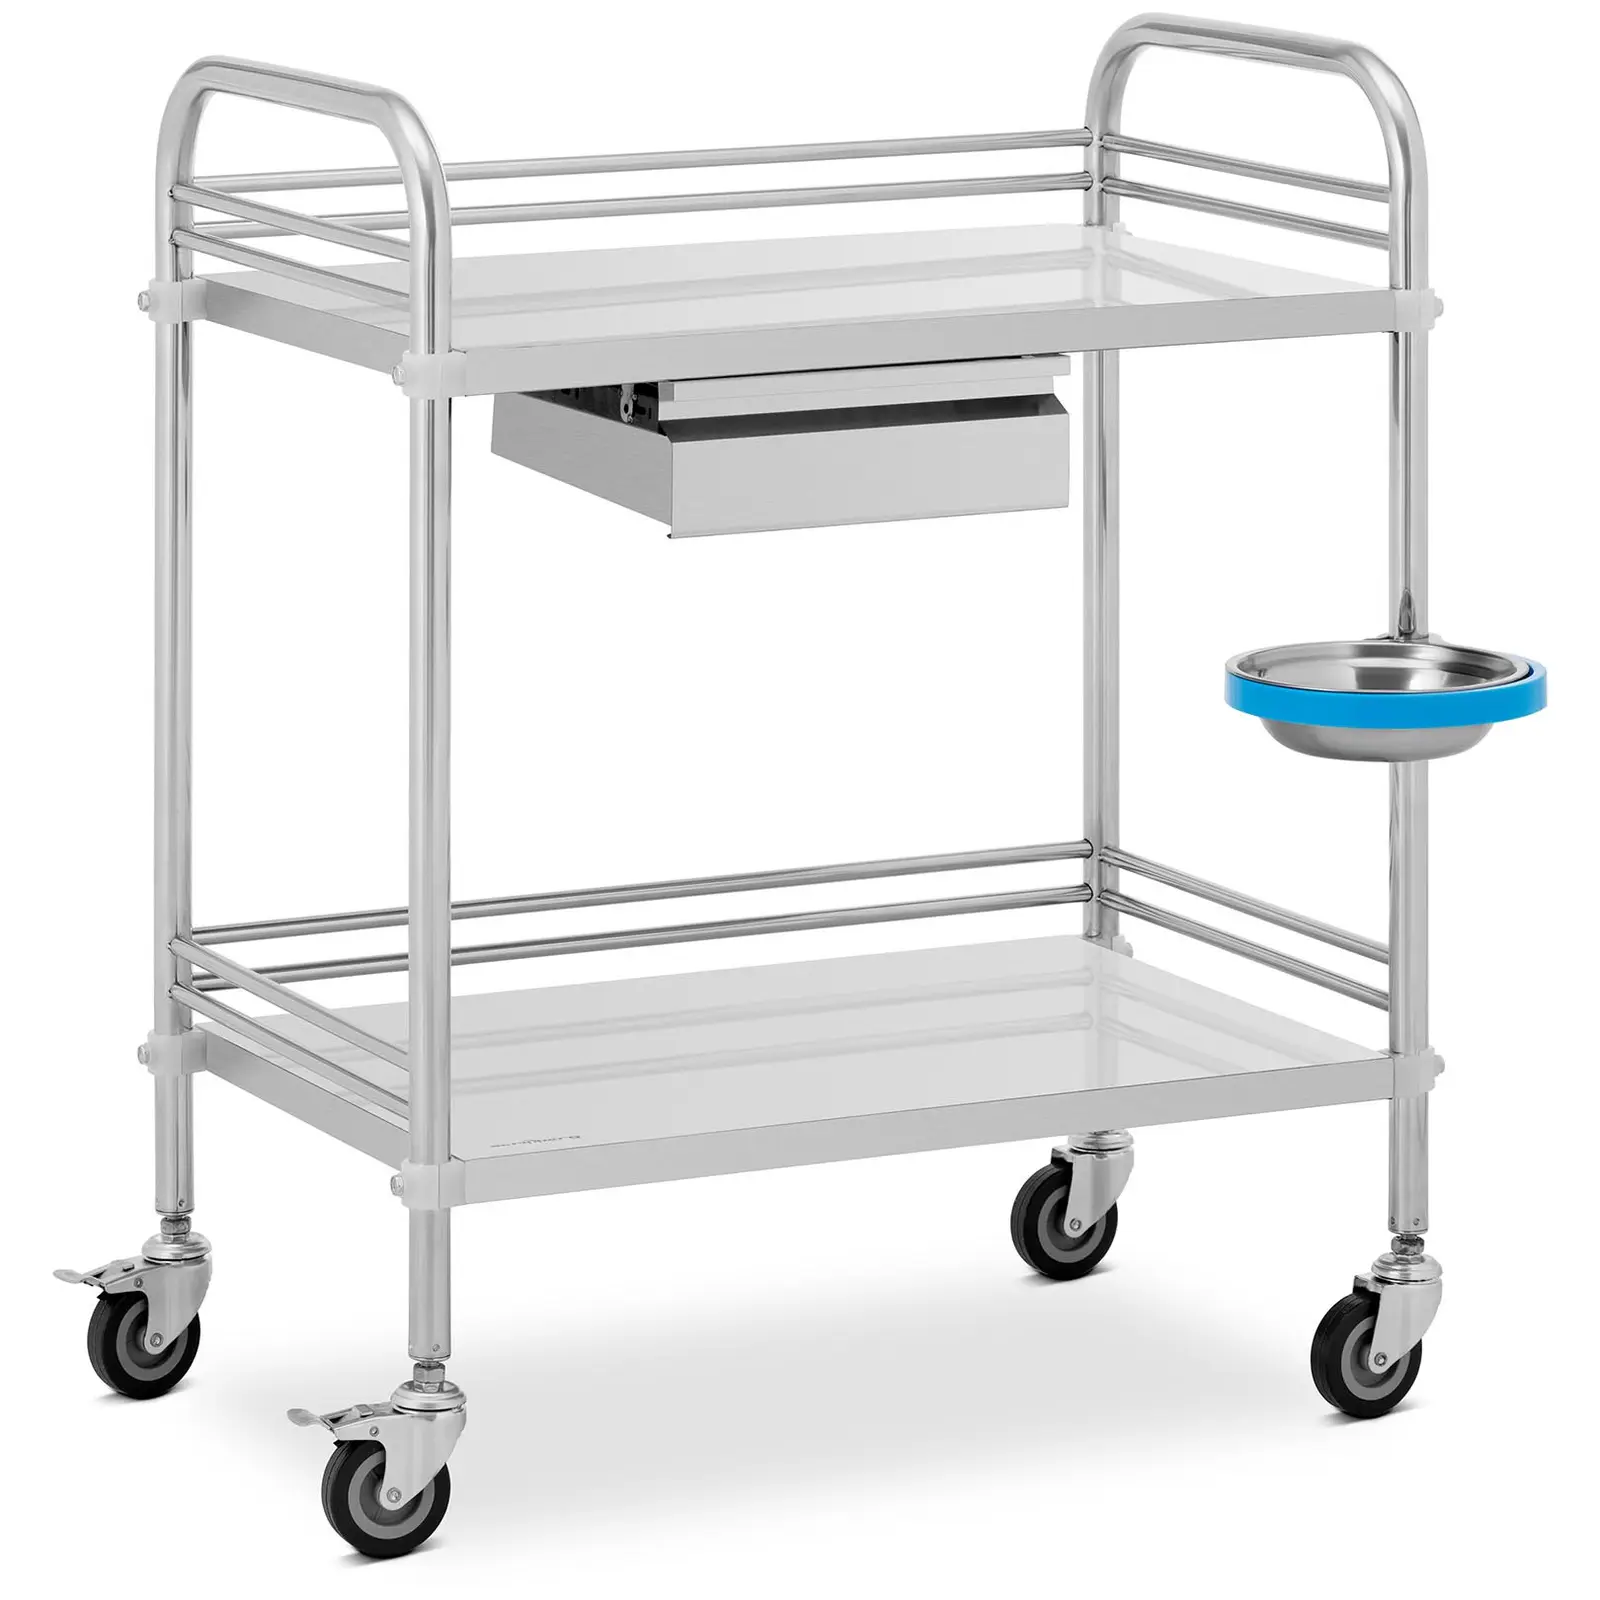 Laboratorinis vežimėlis - nerūdijantis plienas - 2 lentynos 63 x 40 x 12,5 cm - 1 stalčius - 20 kg